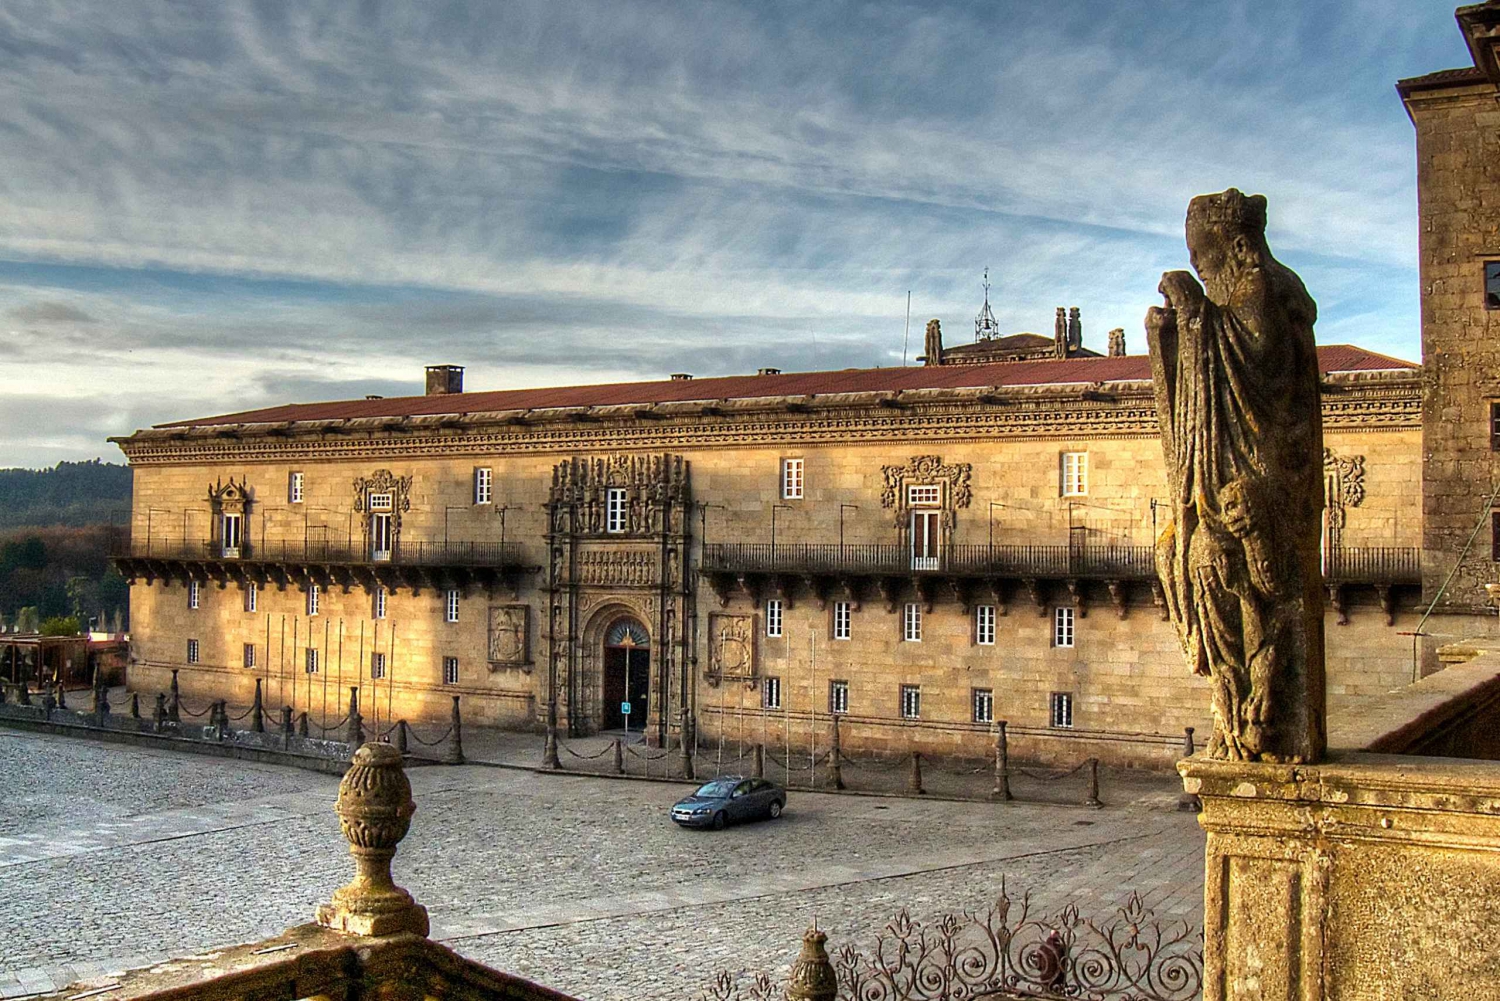 Santiago de Compostela: Visita al Hostal de los Reyes Católicos